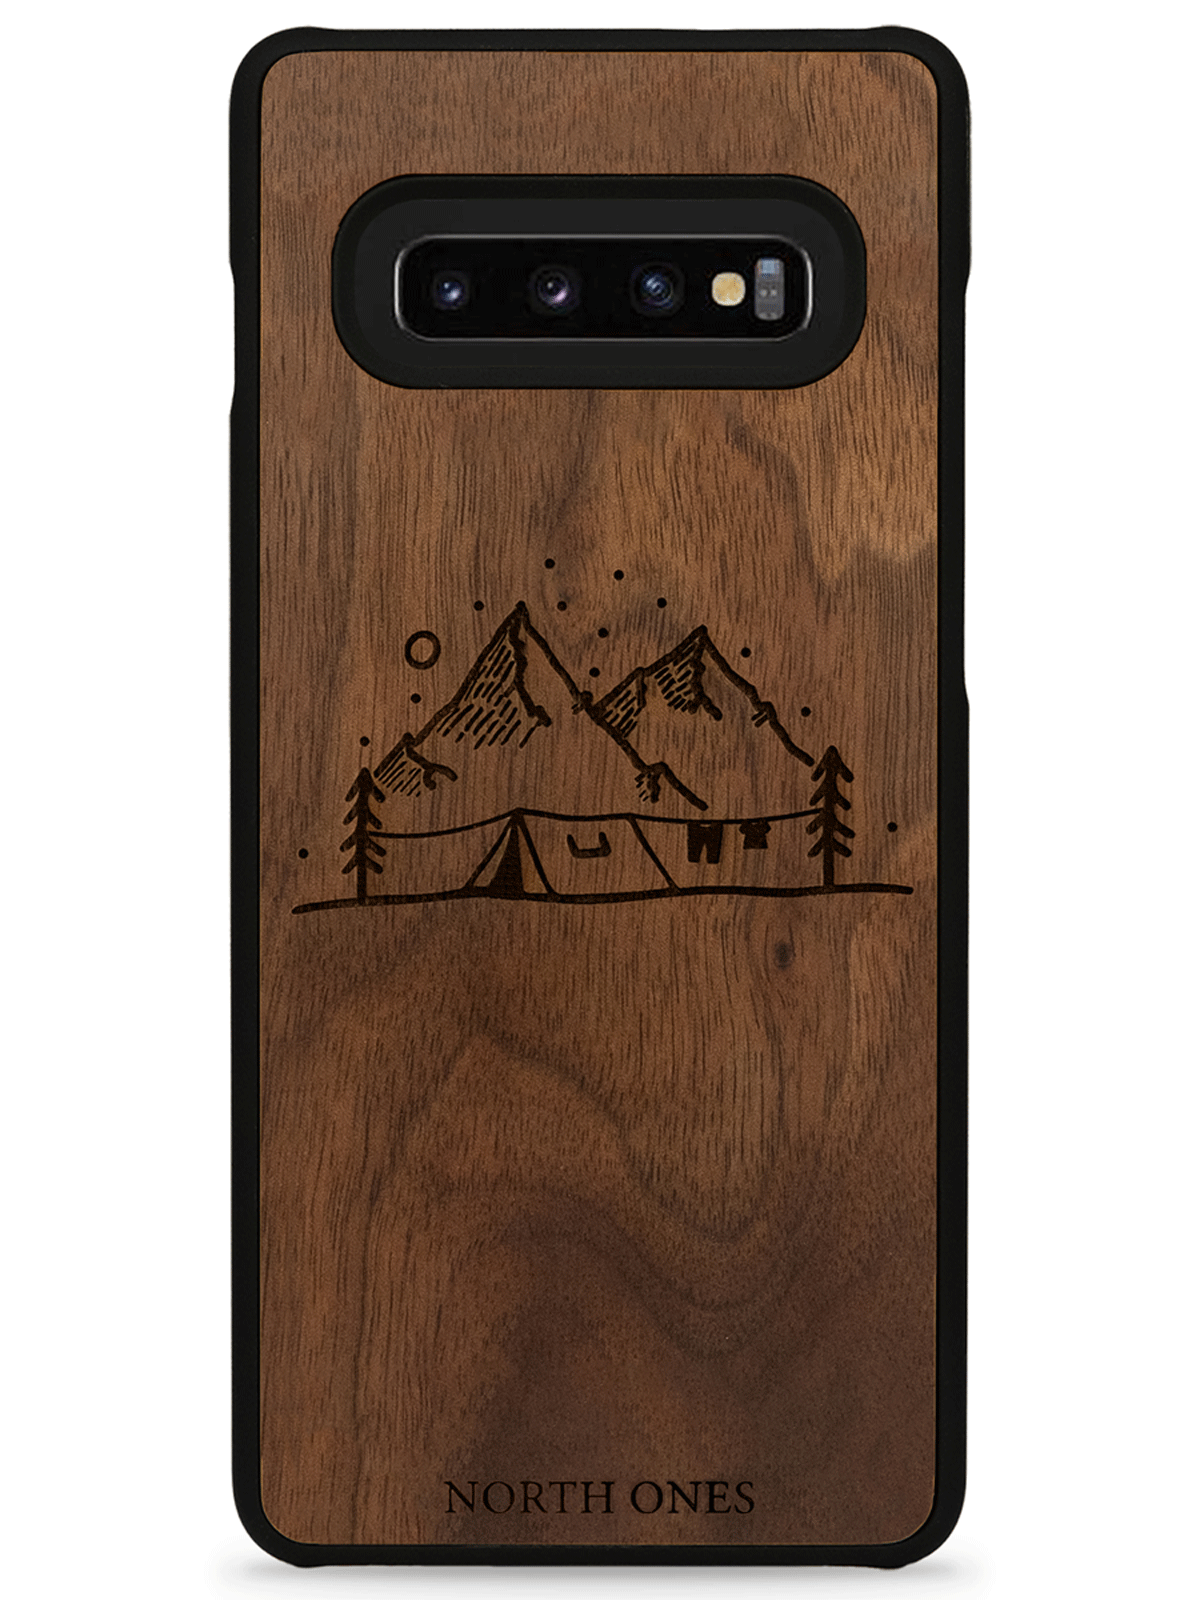 Mobilskal trä vildmark walnut inivildmarken edition Samsung galaxy S10+